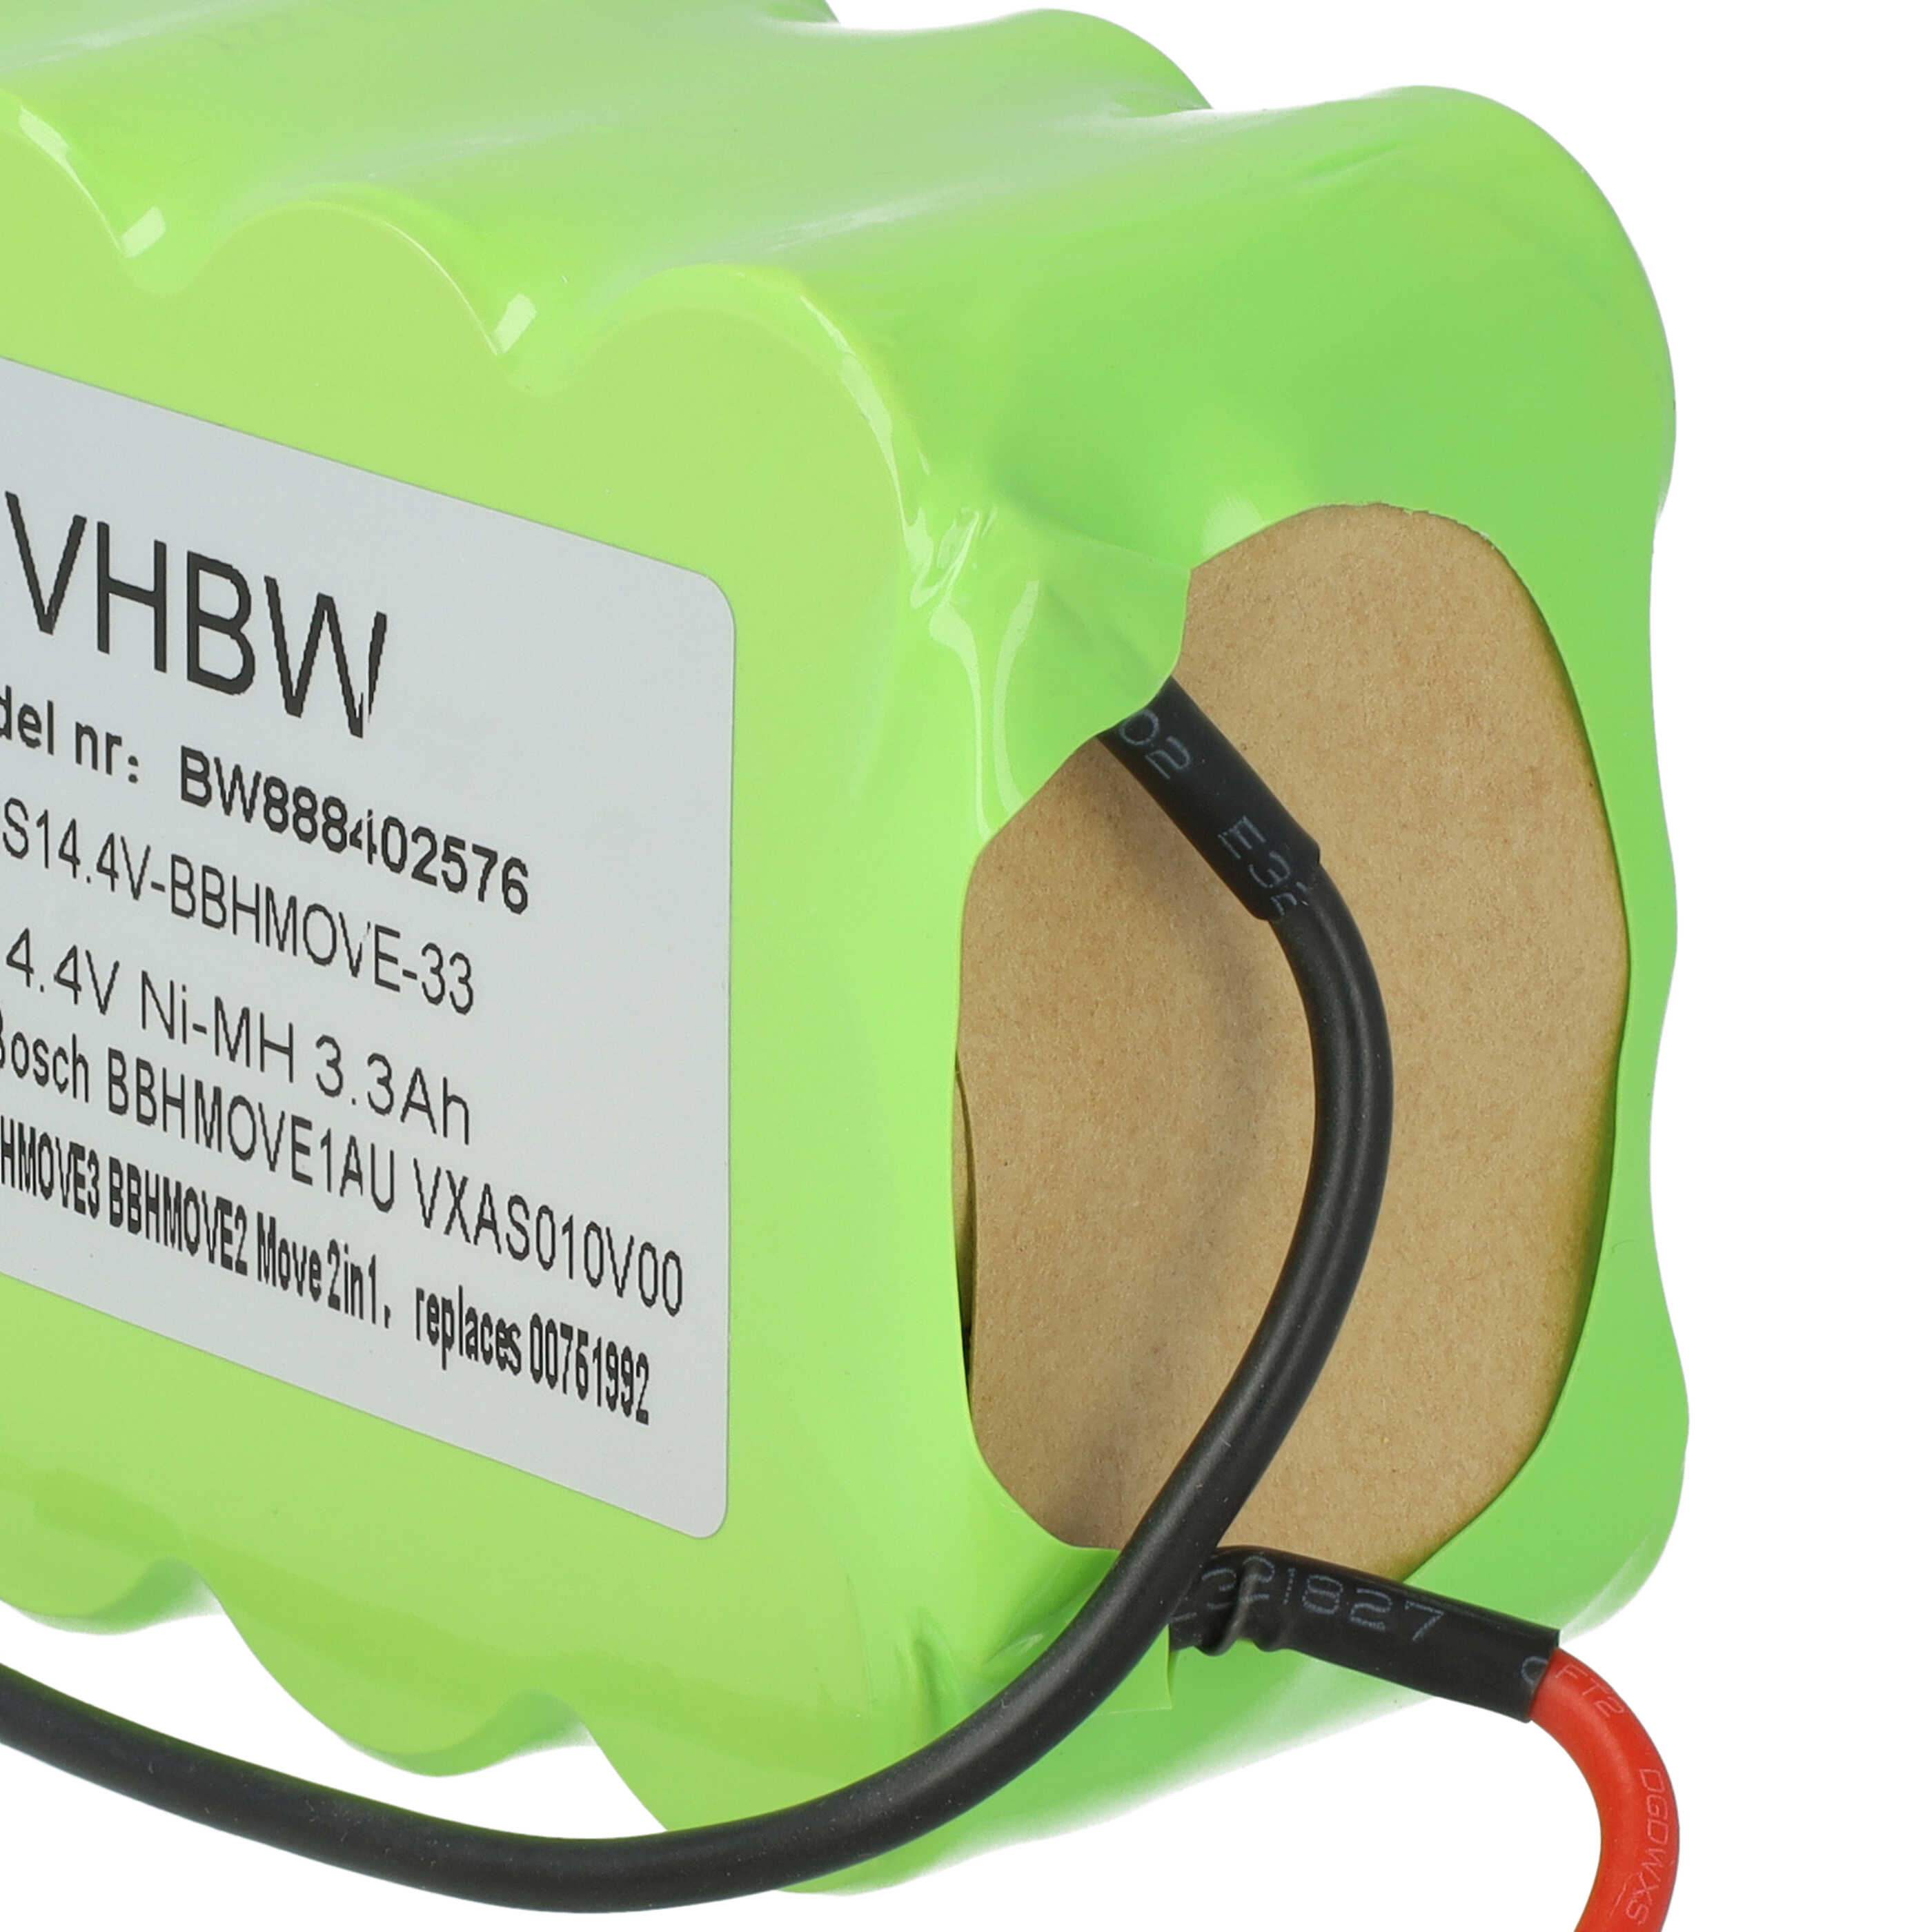 Batterie remplace Bosch GPRHC18SV007, FD8901, GP180SCHSV12Y2H, 00751992 pour aspirateur - 3300mAh 14,4V NiMH